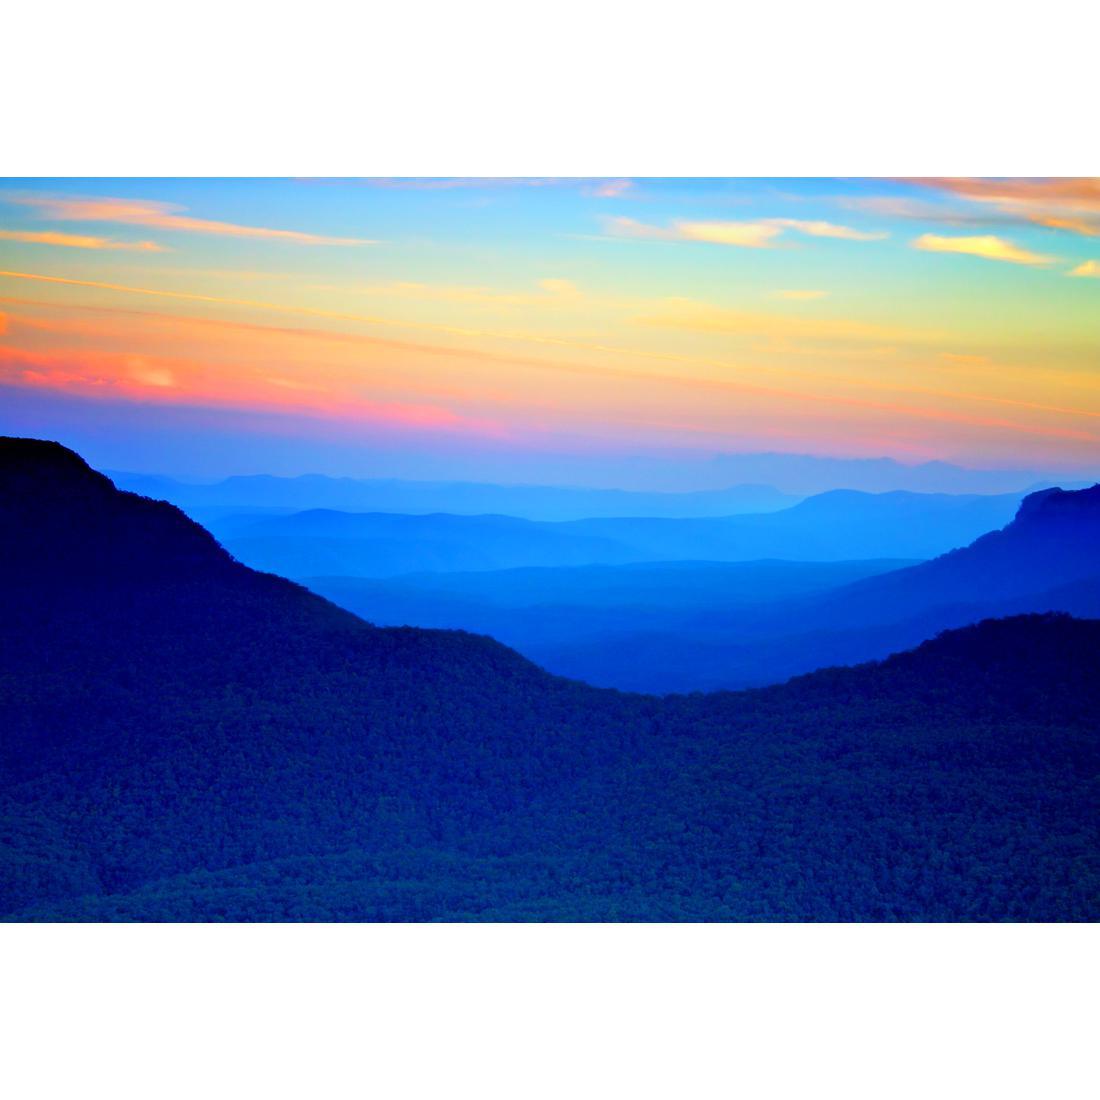 Blue Mountain Sunset - wallart-australia - Canvas